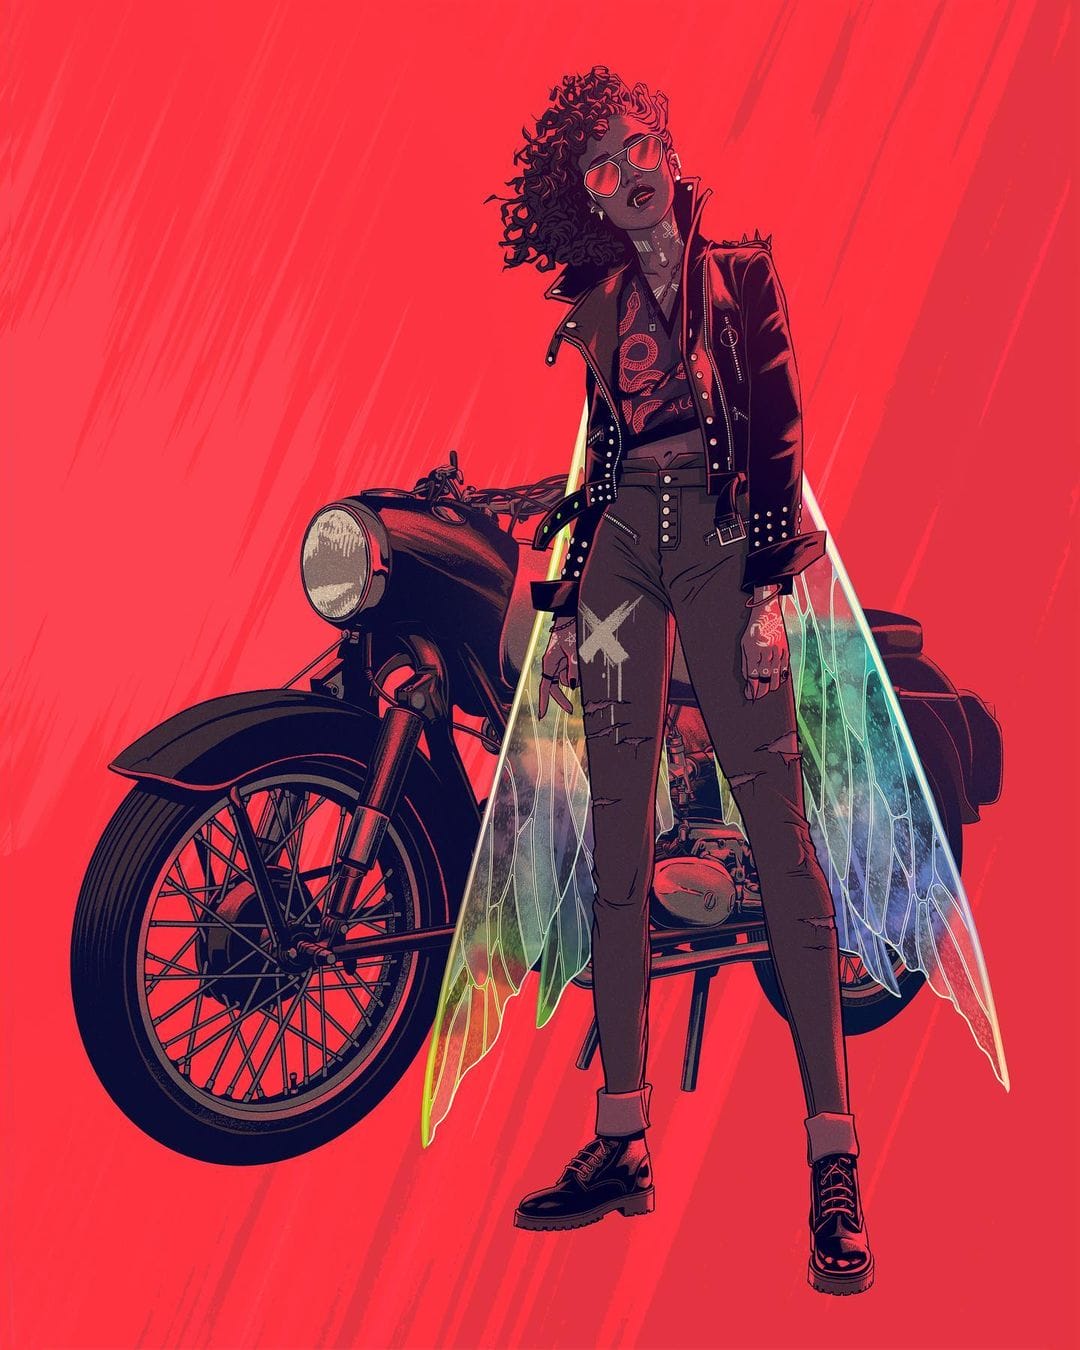 Affiche de Kevin Tong d'une femme aux ailes de fées dans des tons rouges et noirs